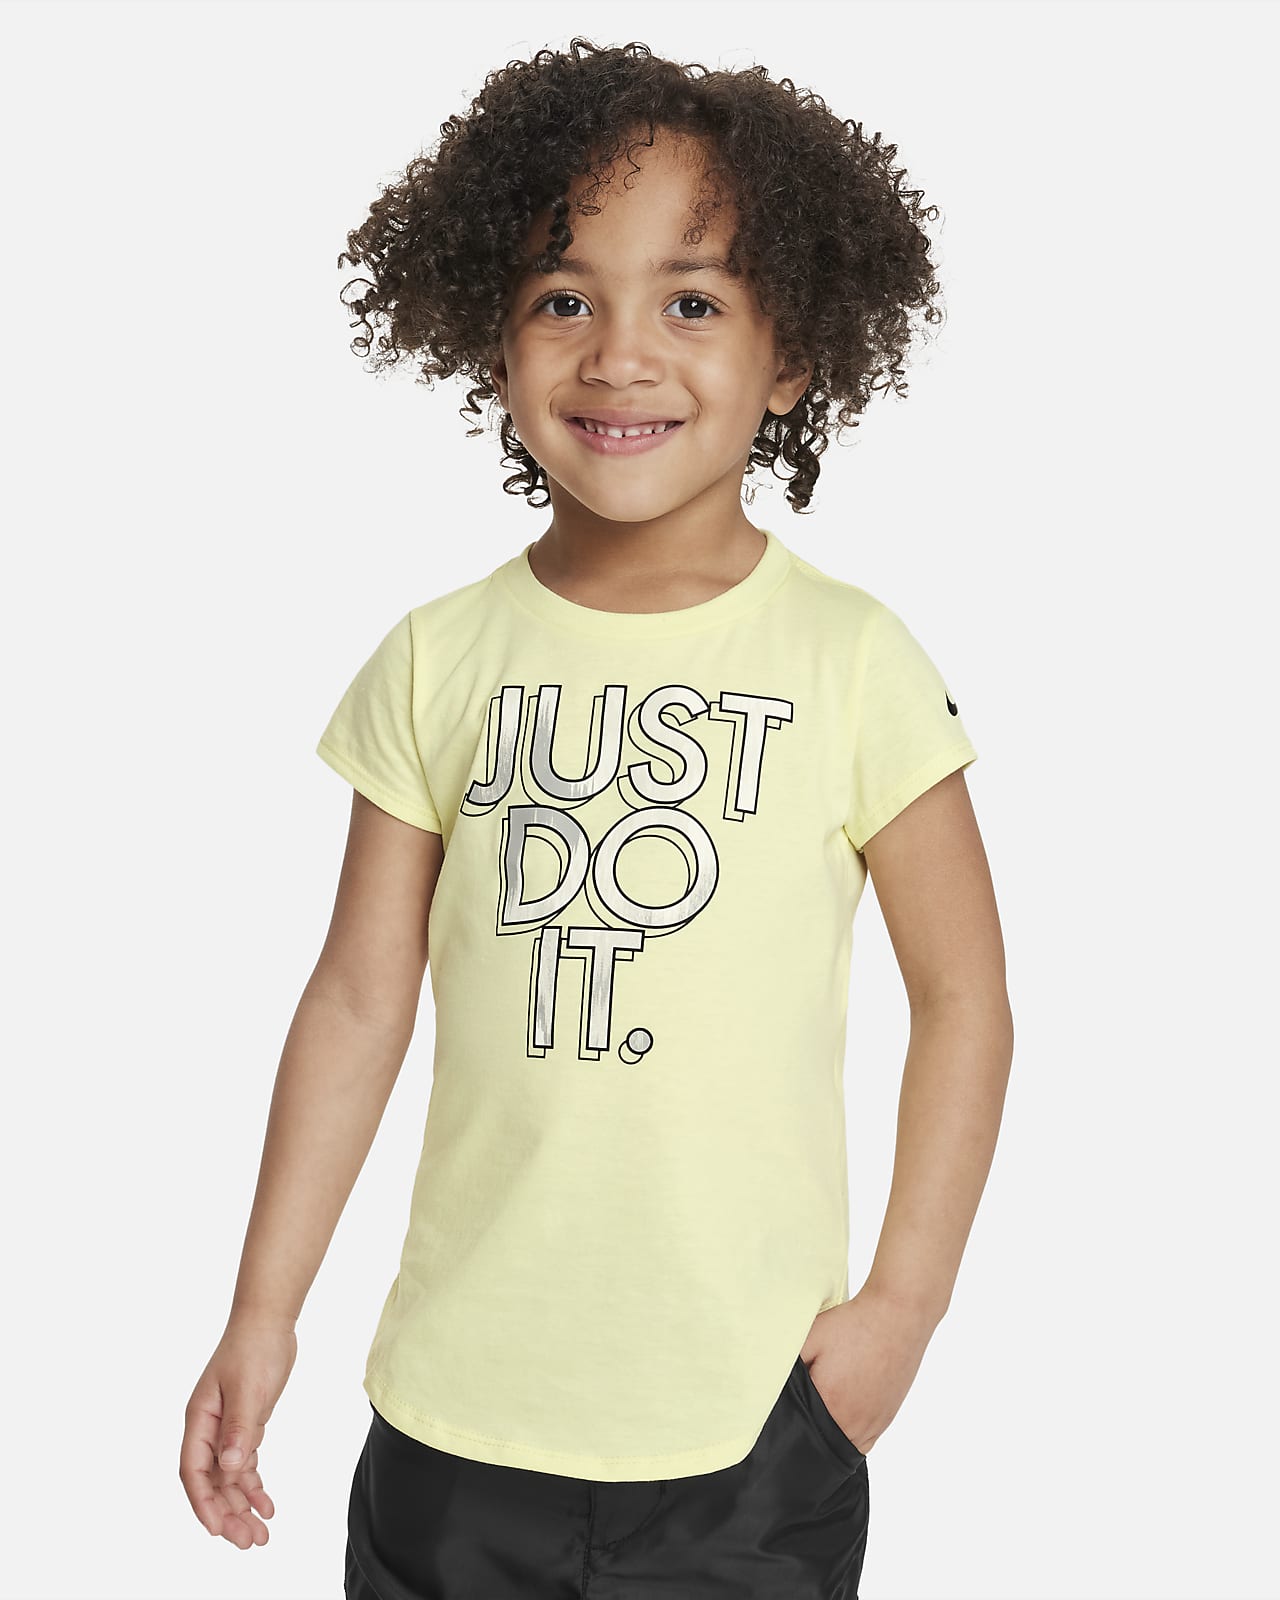 Nike Digi Dye "Just Do It" Tee Toddler T-Shirt